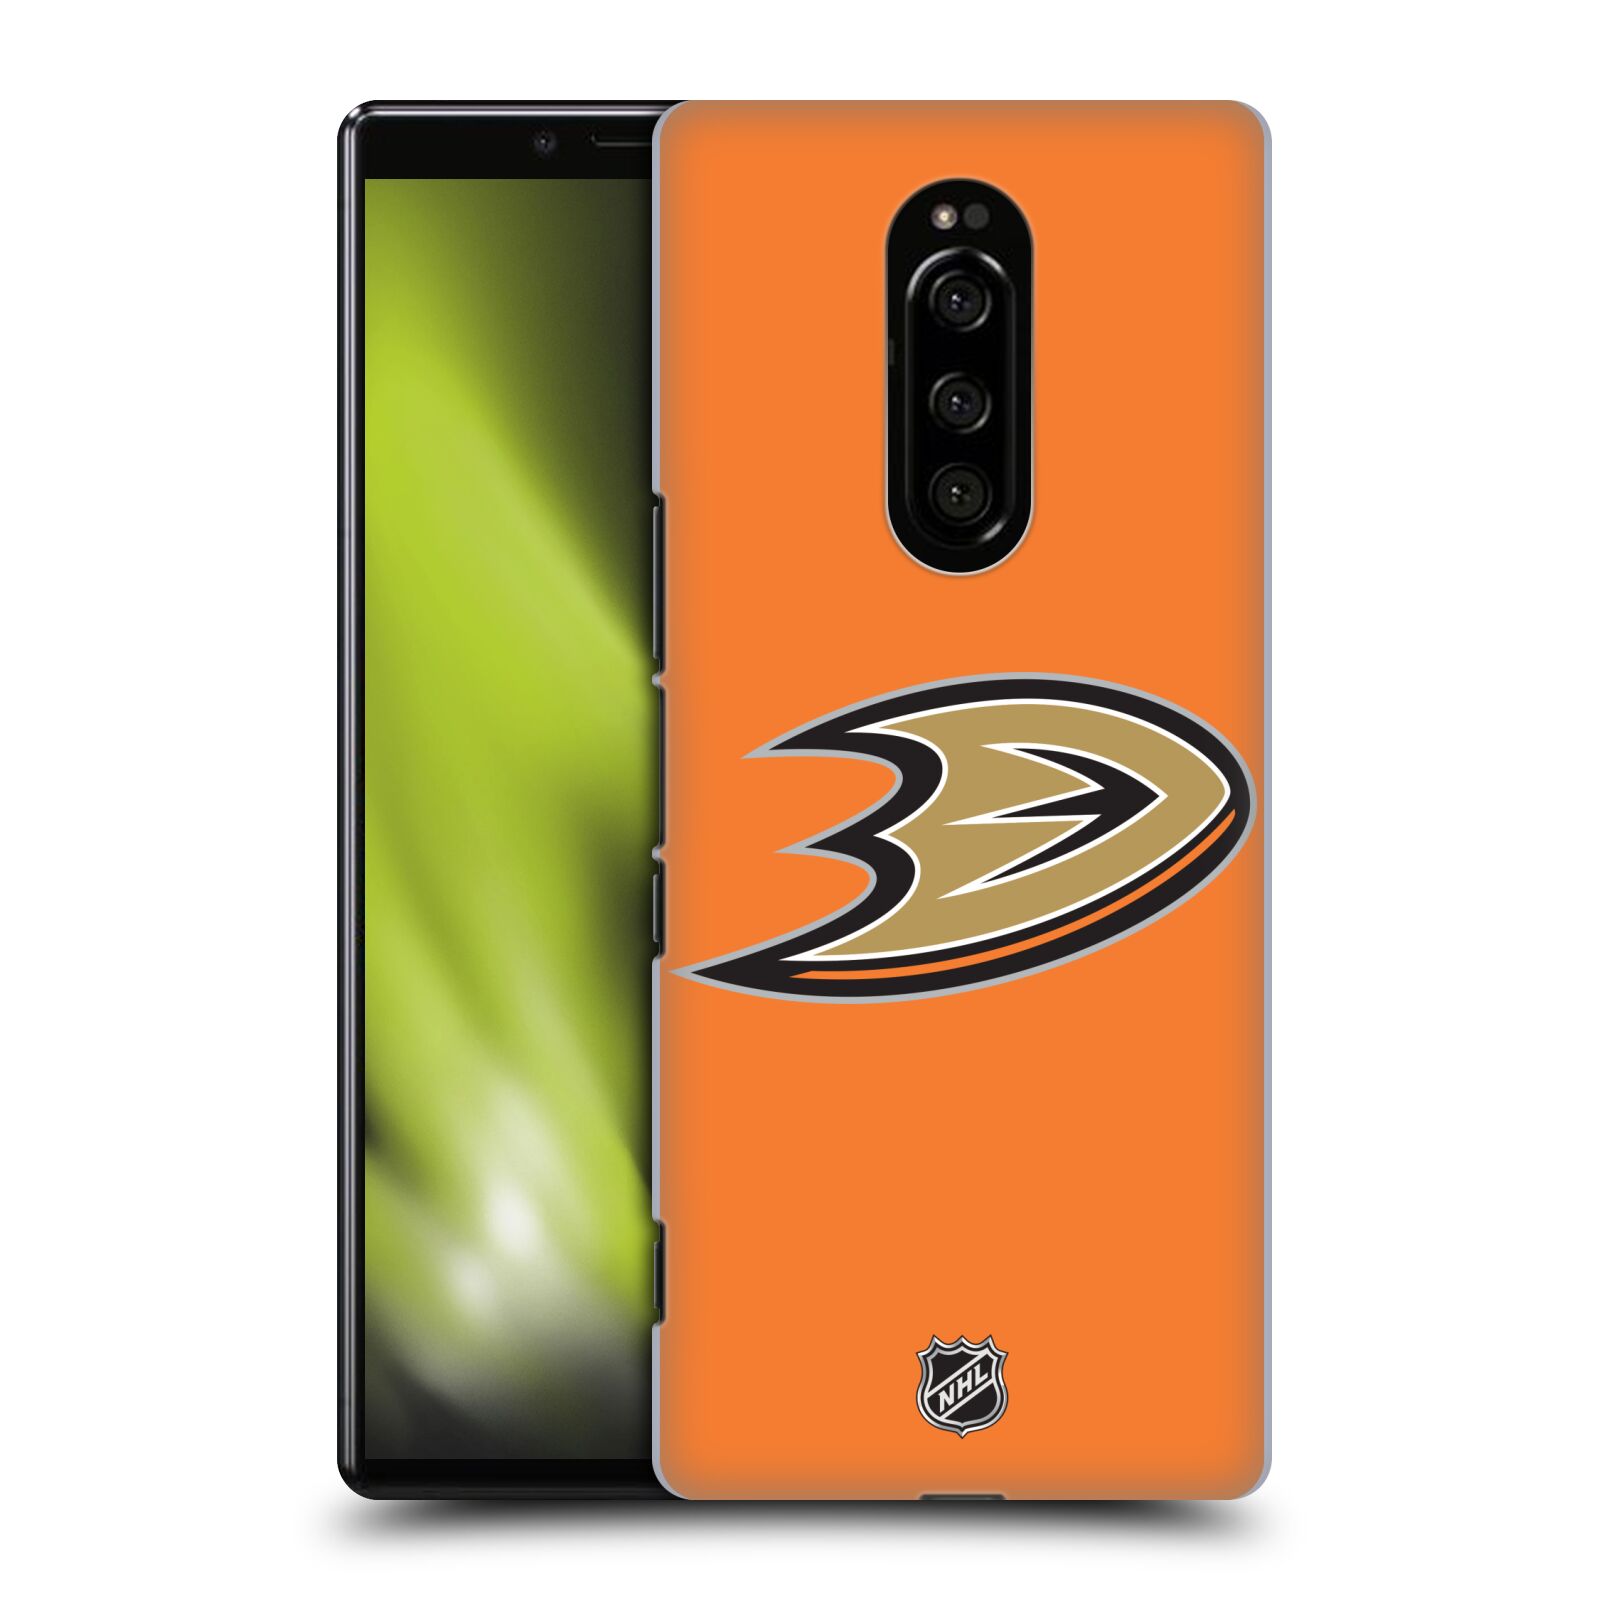 Pouzdro na mobil Sony Xperia 1 - HEAD CASE - Hokej NHL - Anaheim Ducks - Oranžové pozadí